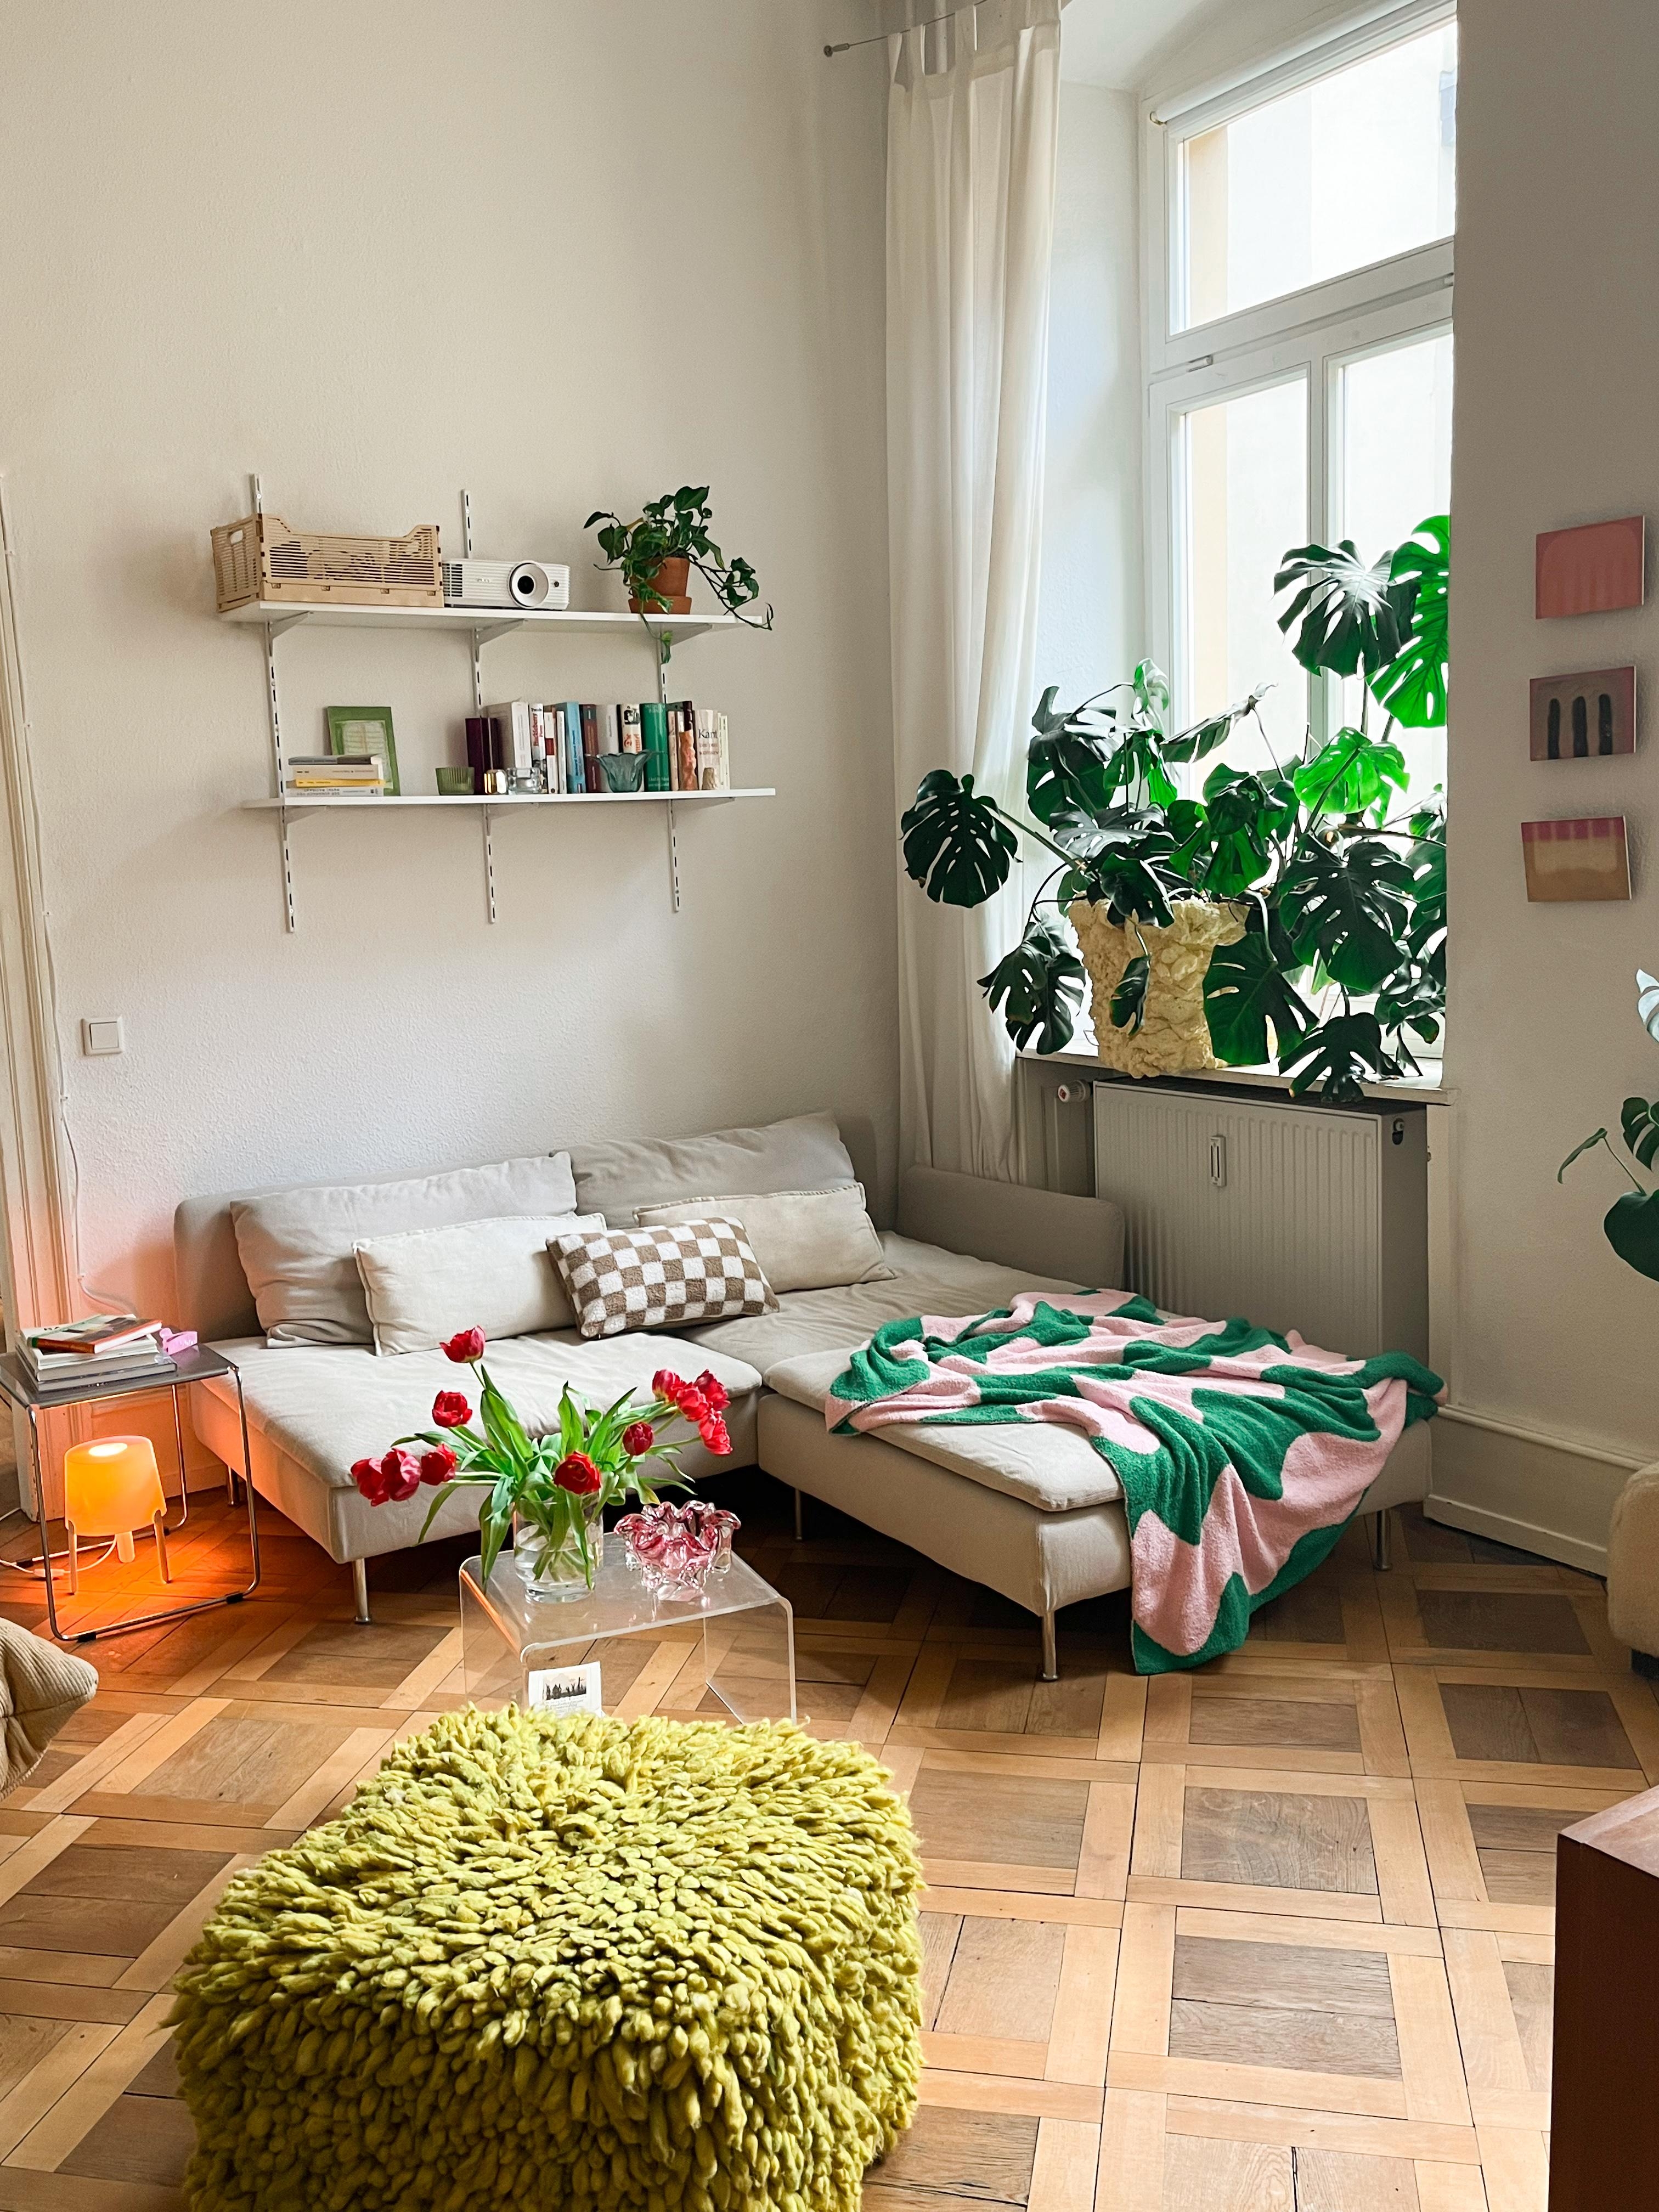 Hallo liebe Couchcommunity, ich heiße Inken, wohne in einem
Altbau in Mannheim und bin neu hier 🙃
Da starte ich doch gleich mit einem Bild meiner Couch 😉
